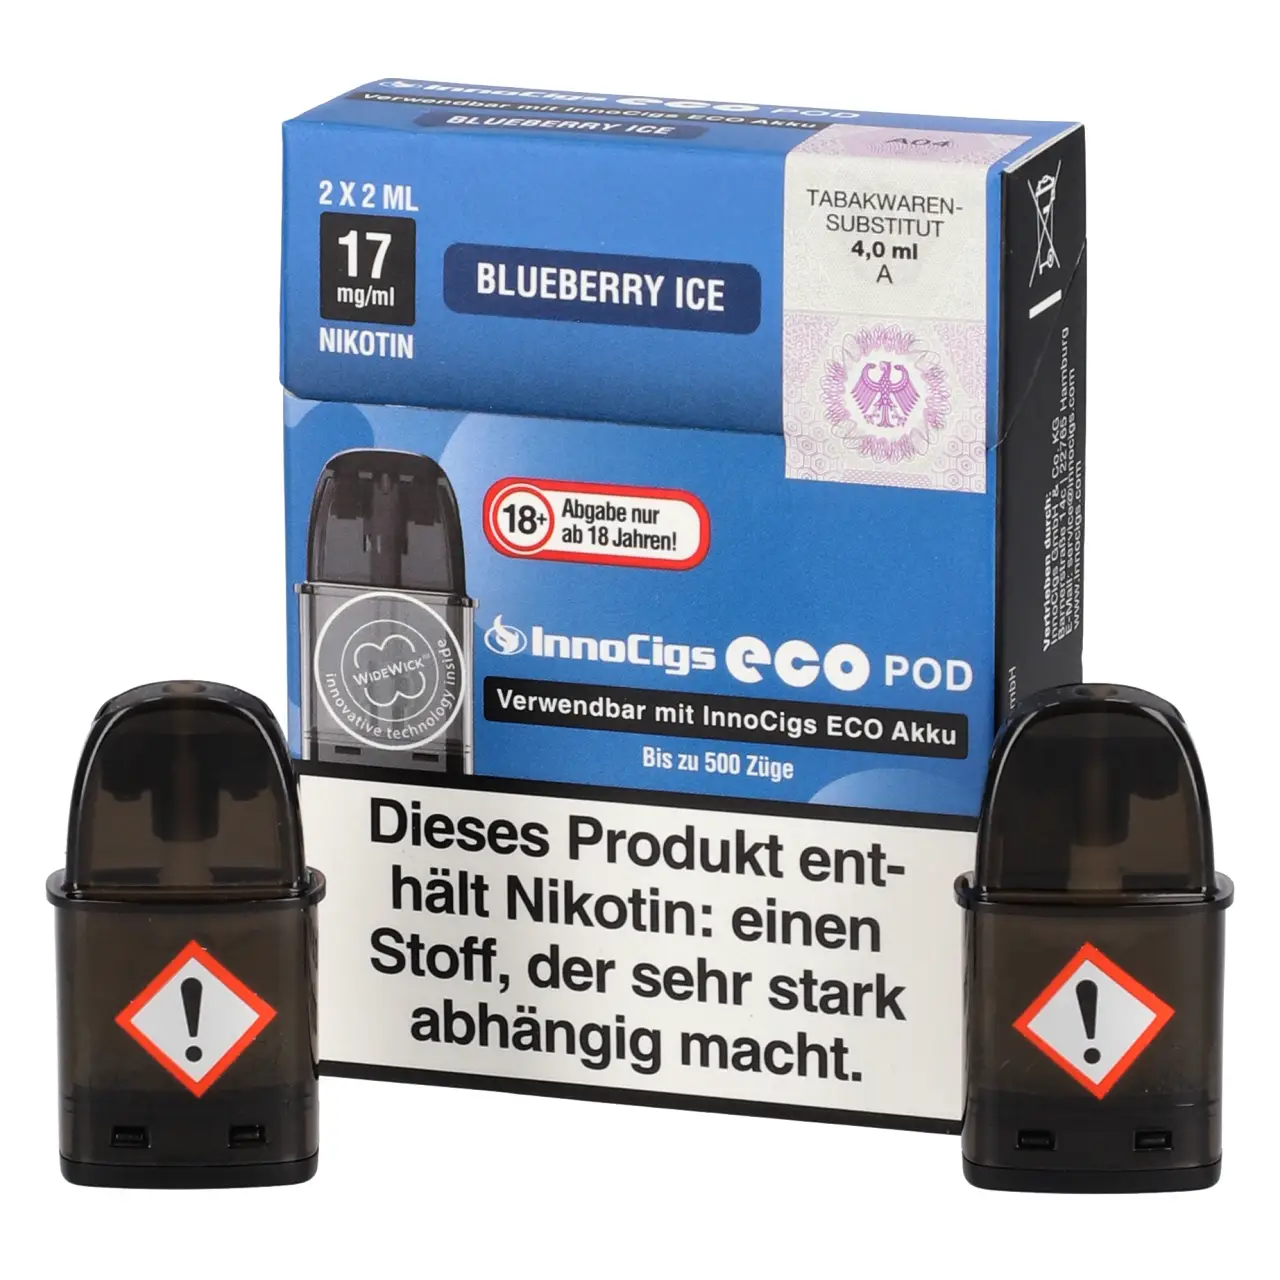 Blueberry Ice - Innocigs Eco Pod befüllt mit 2ml Liquid - für ECO Akku - 2er Packung